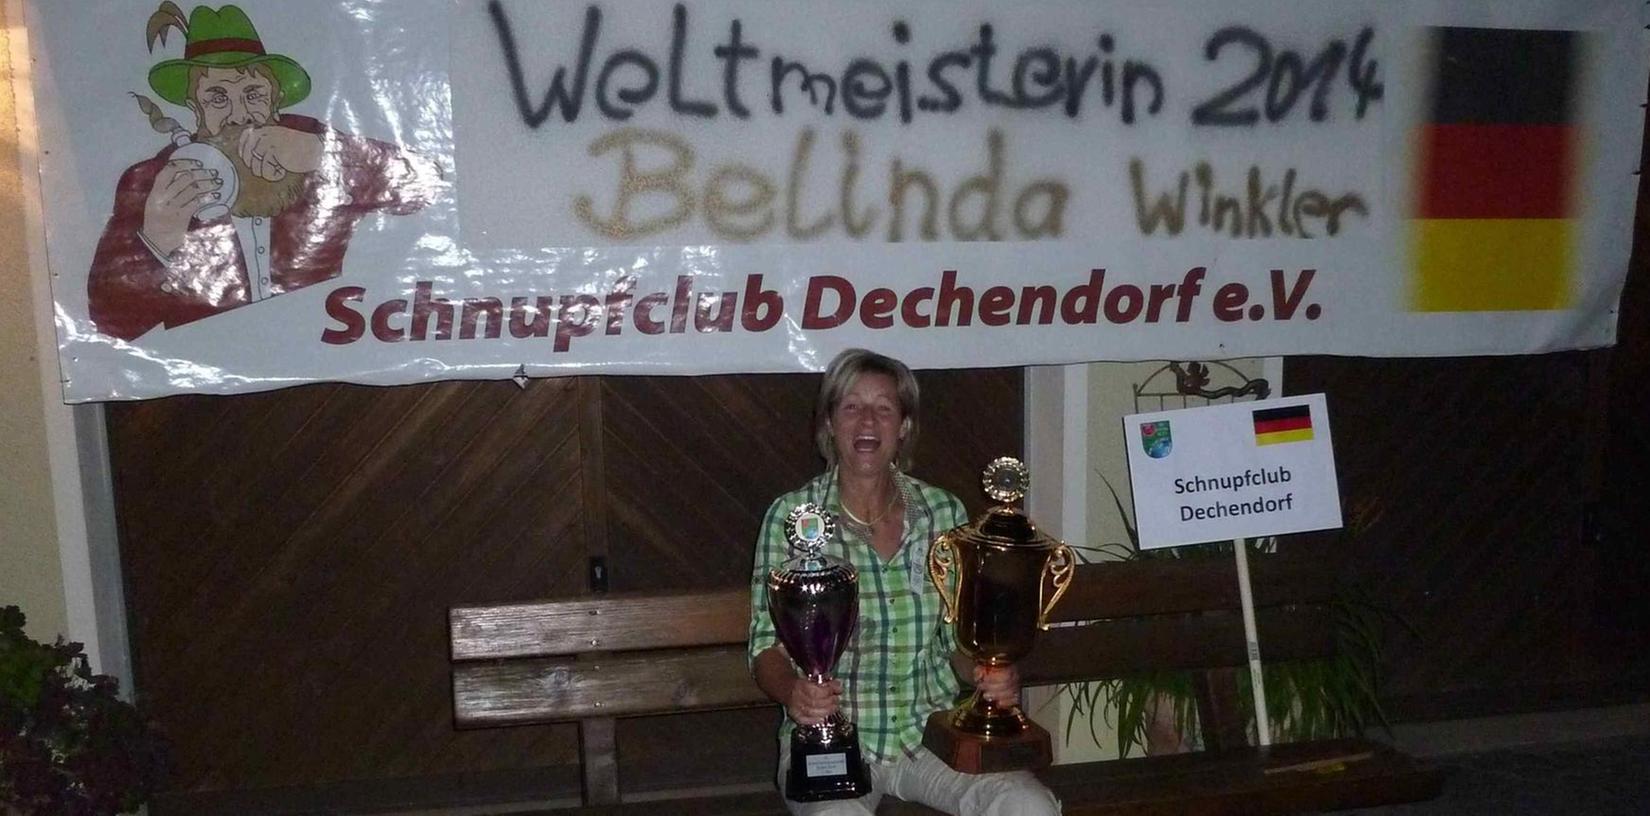 Schnupf-Weltmeisterin aus Dechendorf: Titel für Belinda Winkler